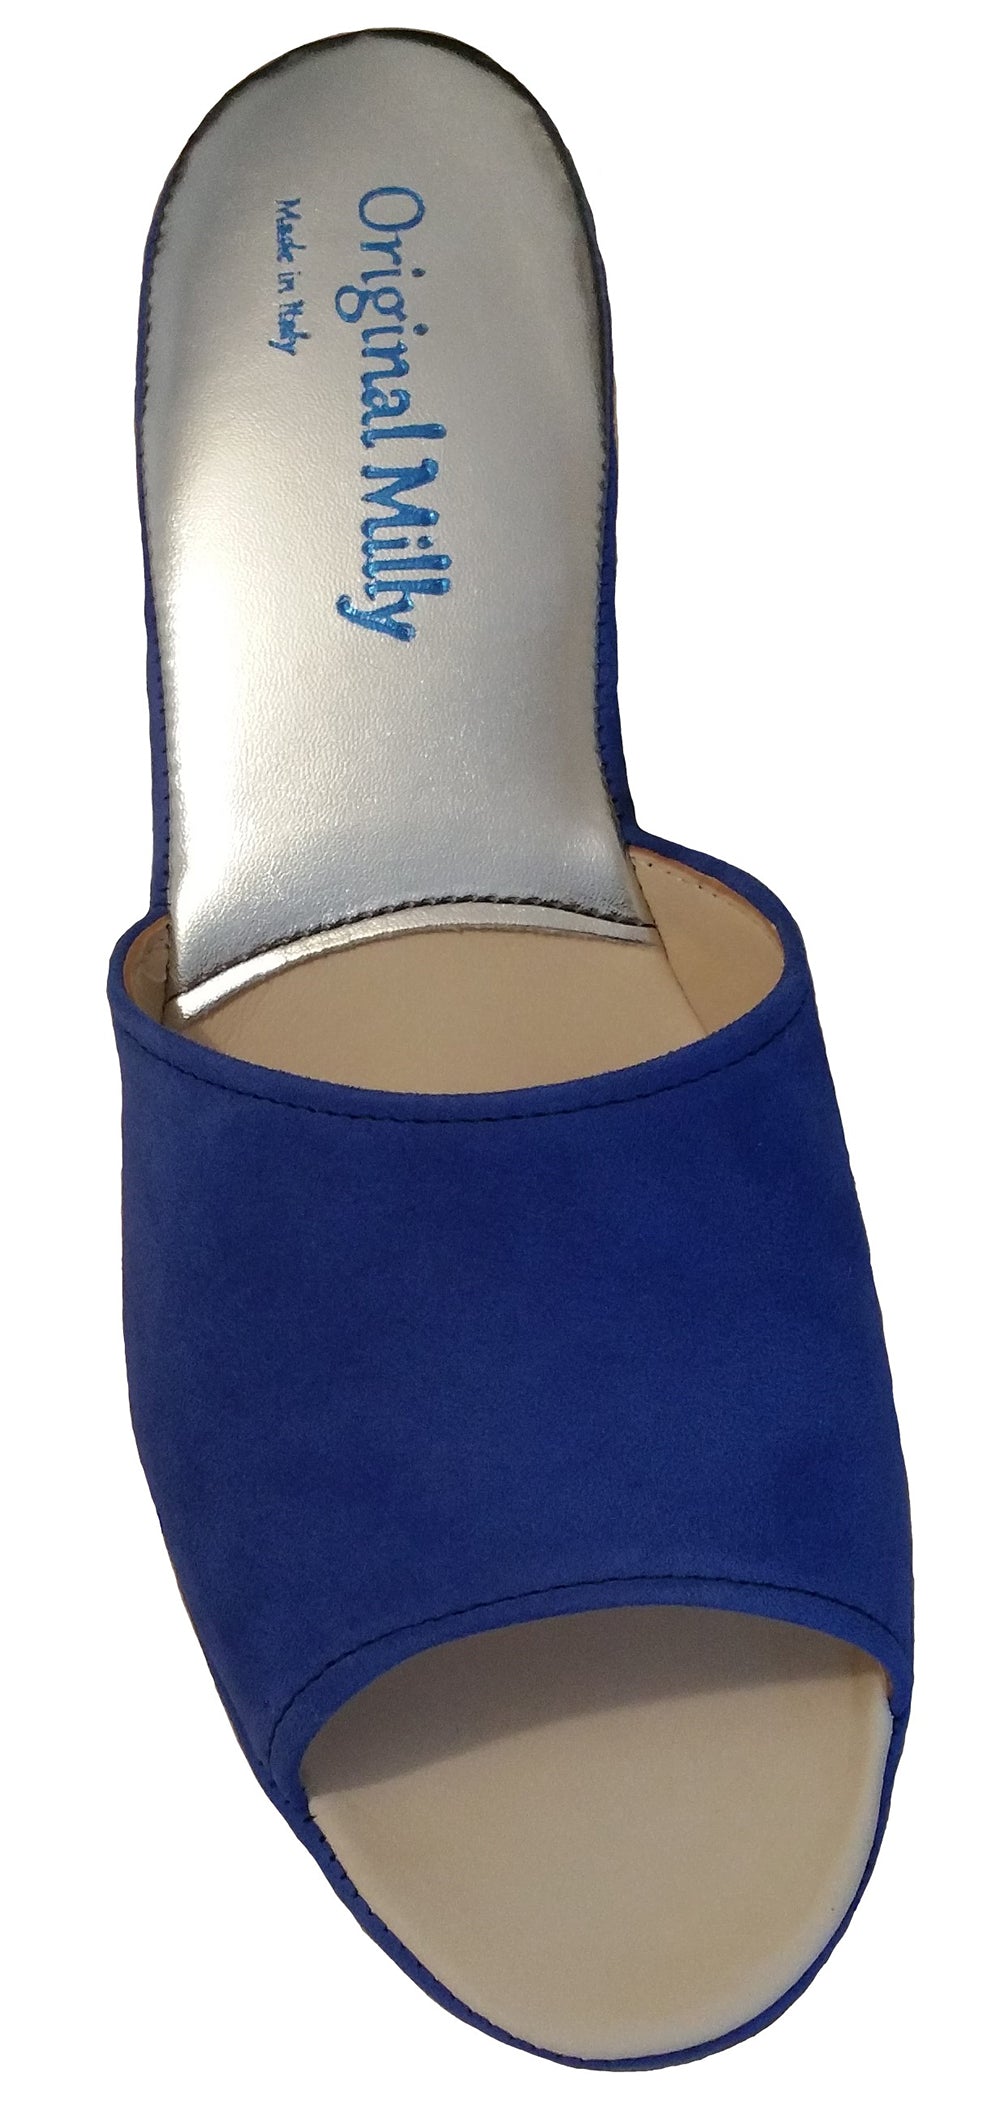 Milly 103 Ciabatte da camera aperte in camoscio per donna pantofole con zeppa 5 cm prodotto artigianale